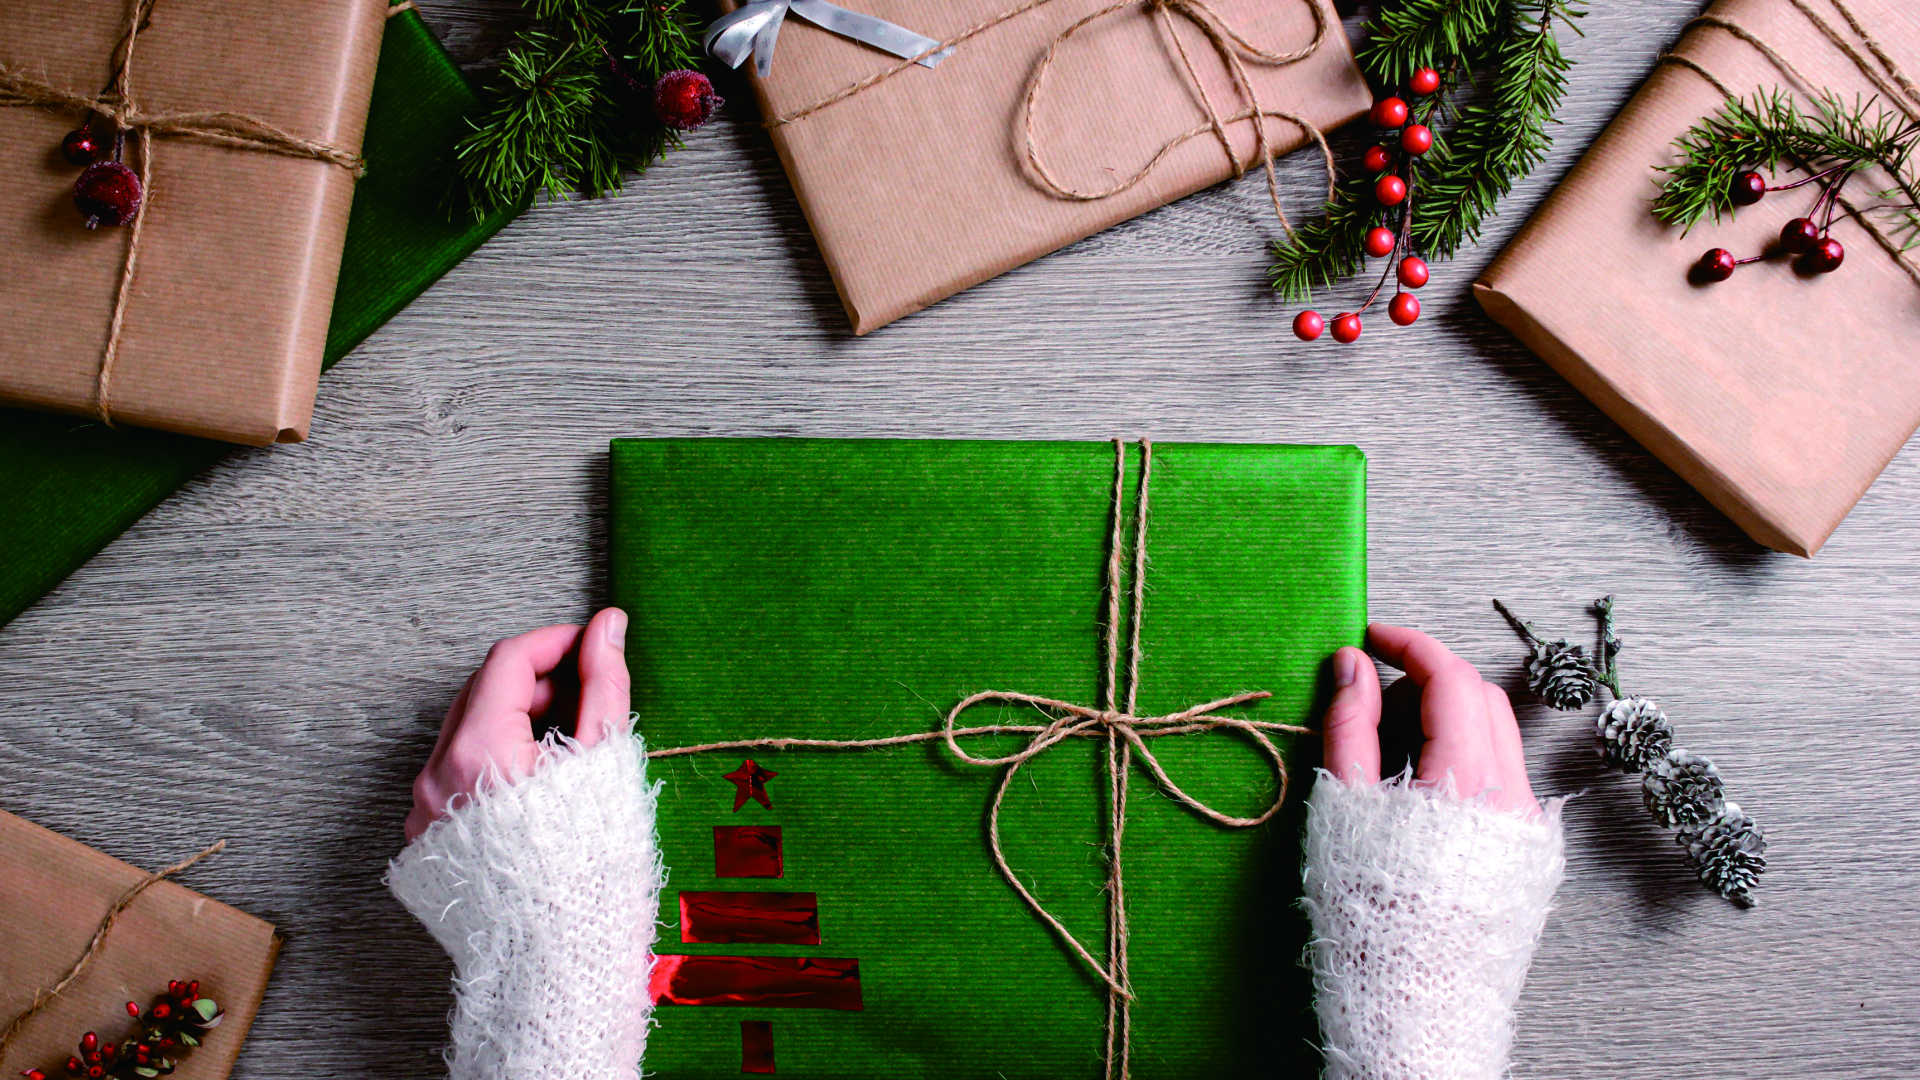 小清新,礼物,温馨一刻,圣诞节,蝴蝶结